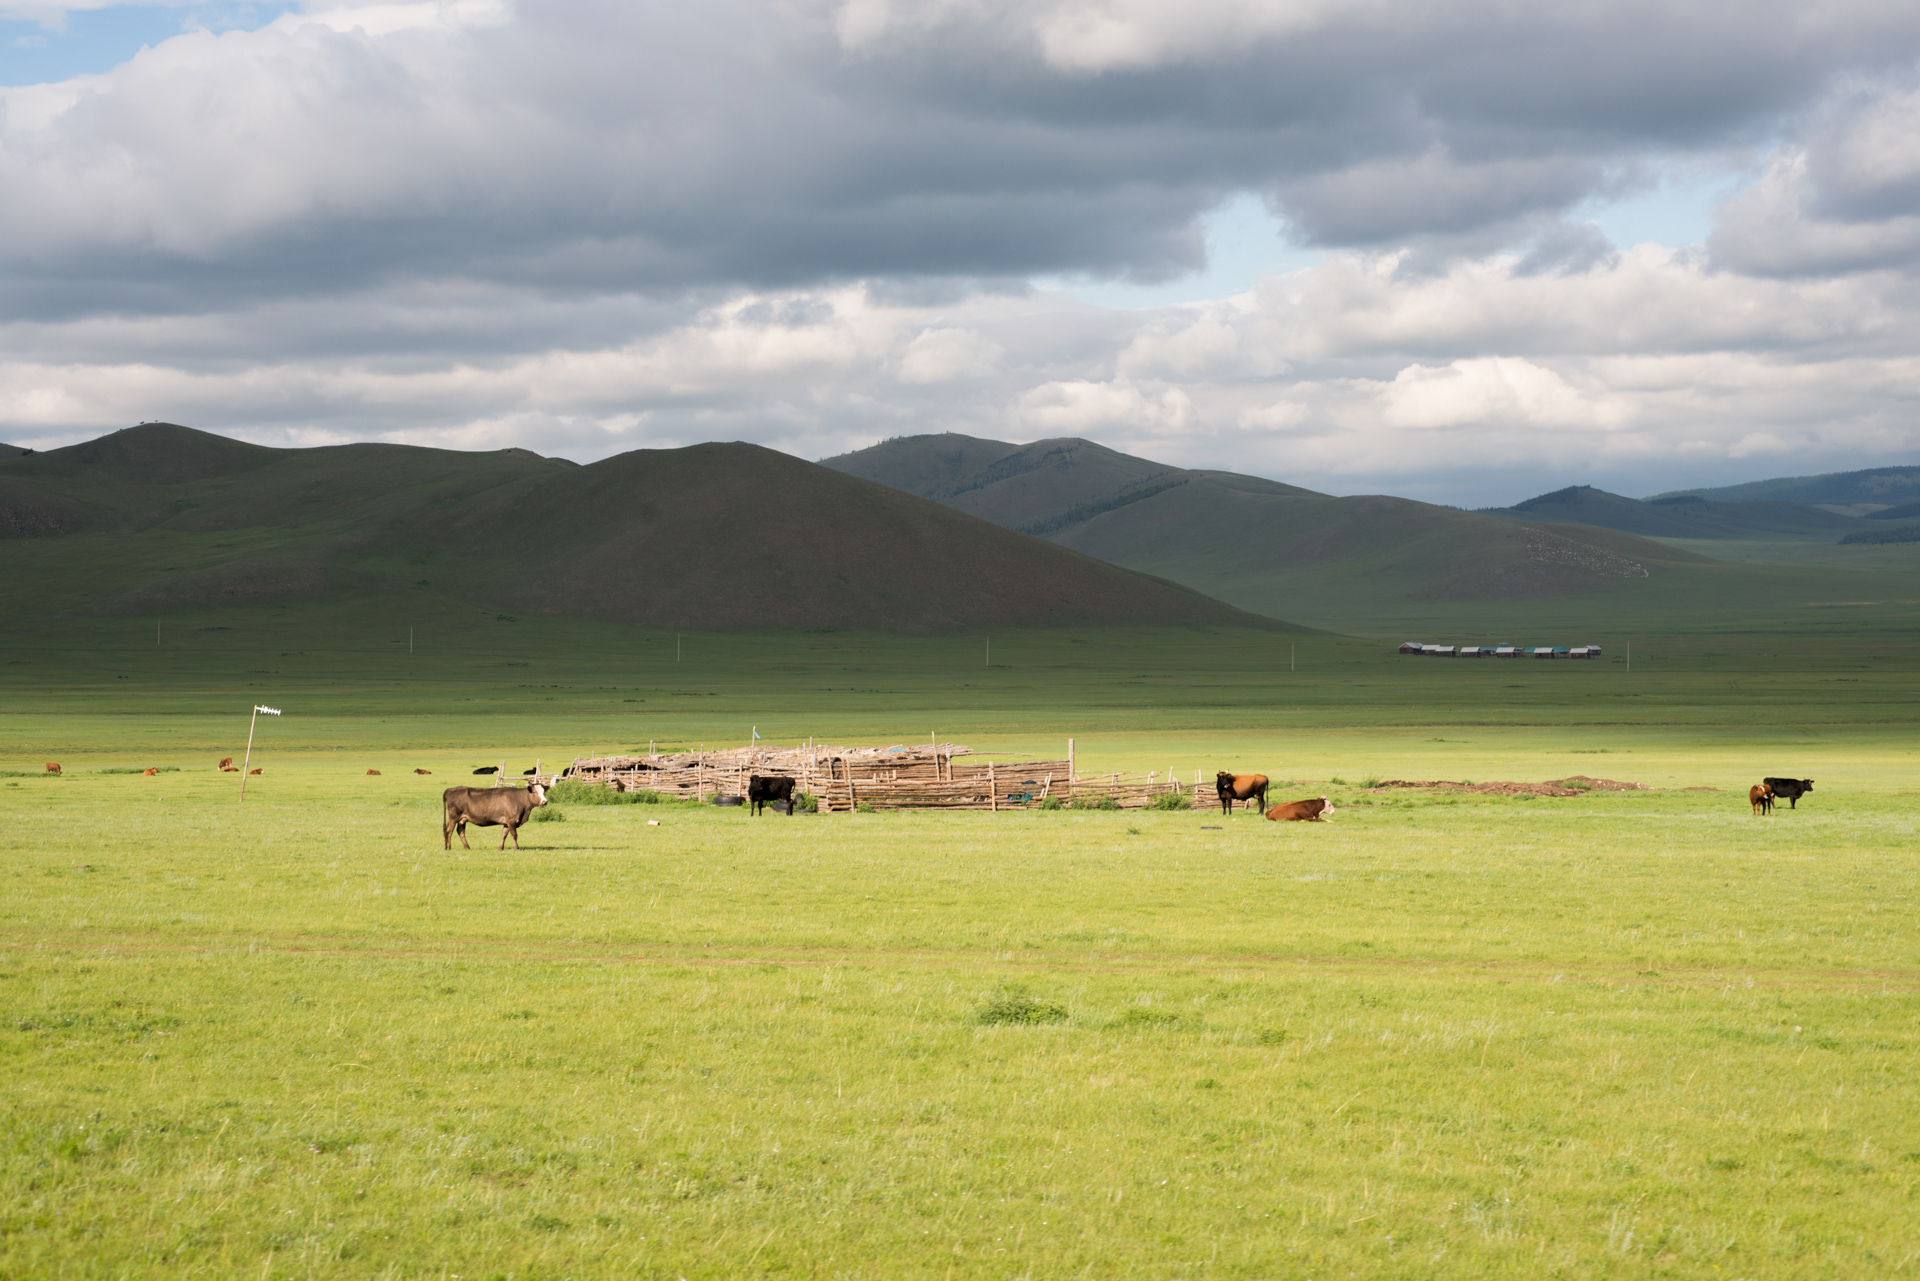 150801_411.jpg : 몽골 학습탐사 2진 사진 8월1일 ...자